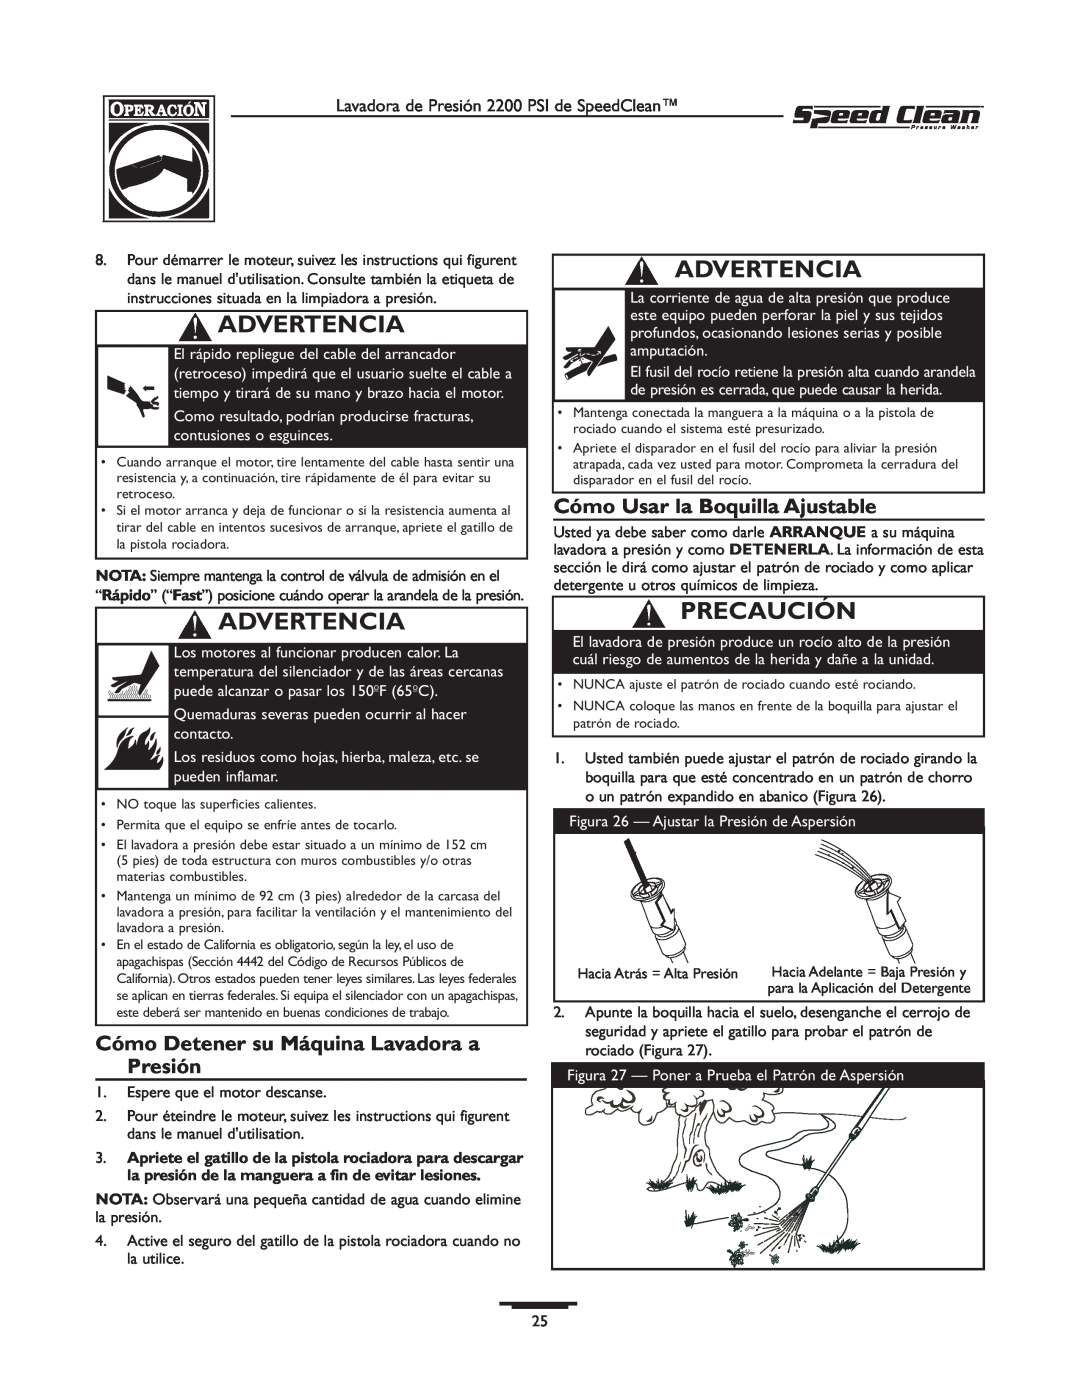 Briggs & Stratton 020239-1 Cómo Detener su Máquina Lavadora a Presión, Cómo Usar la Boquilla Ajustable, Advertencia 